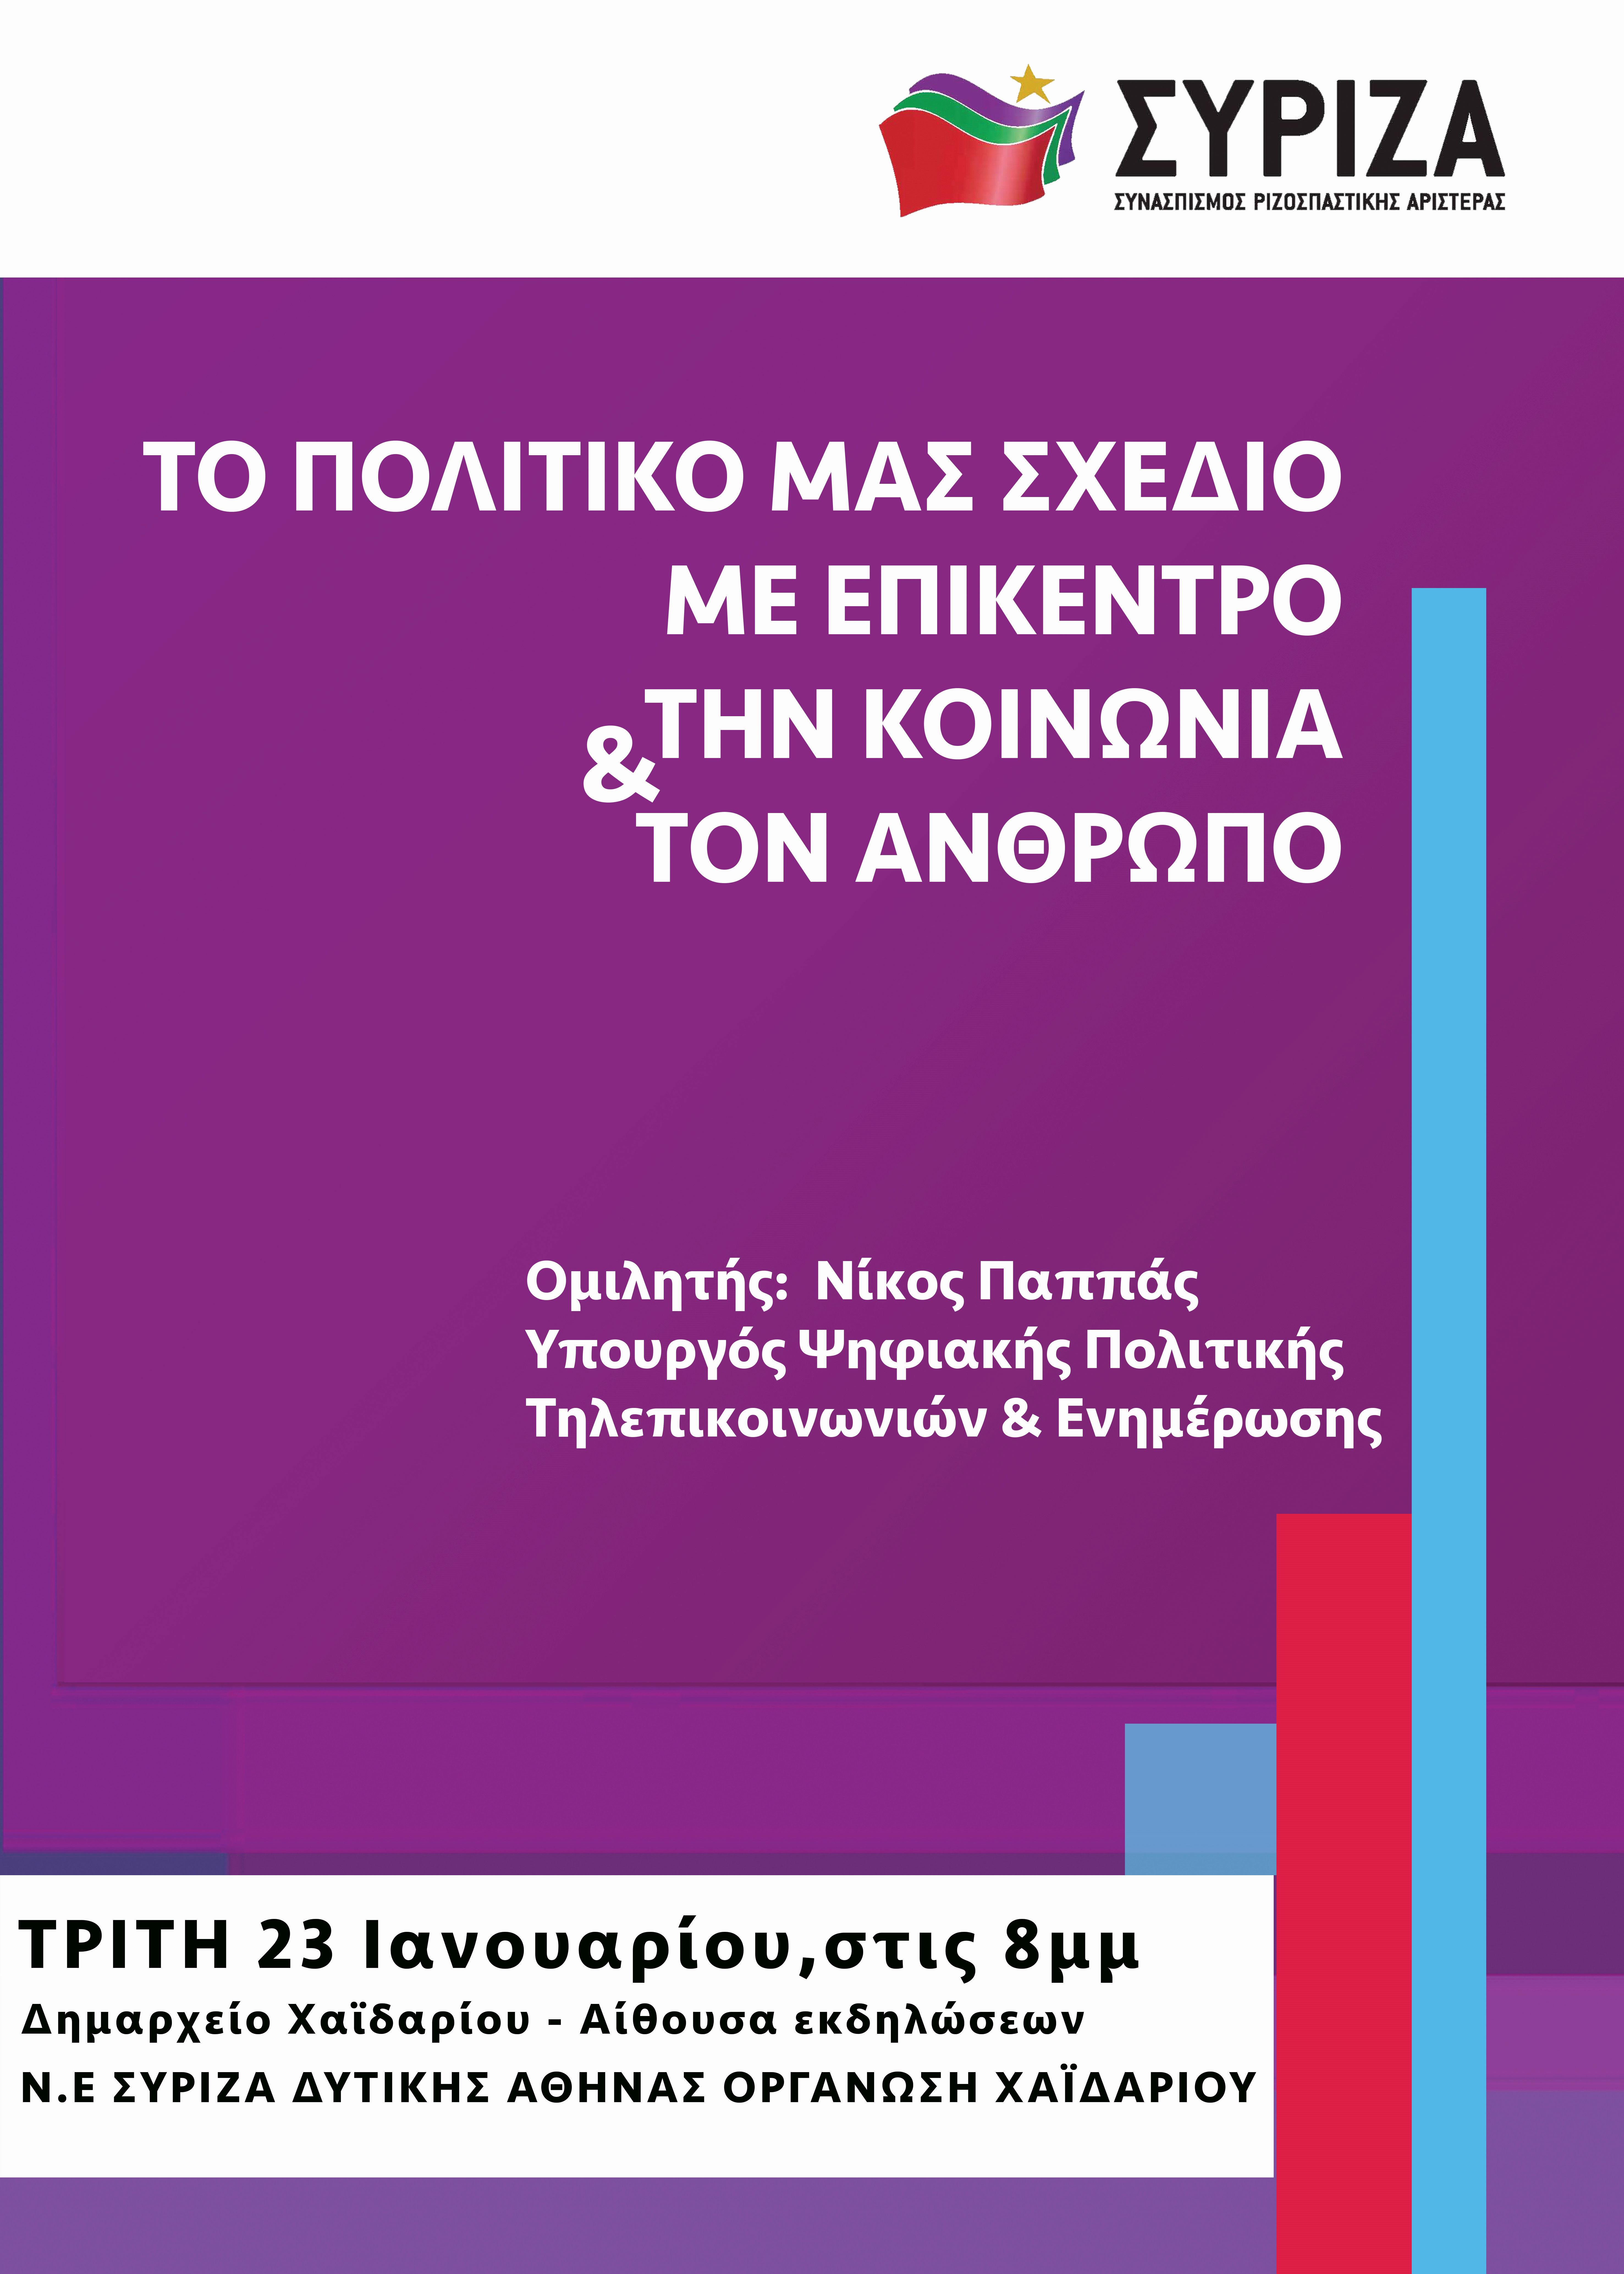 Ανοιχτή πολιτική εκδήλωση της Ν.Ε. Δυτικής Αθήνας και της Ο.Μ. Χαϊδαρίου με ομιλητή τον Νίκο Παππά